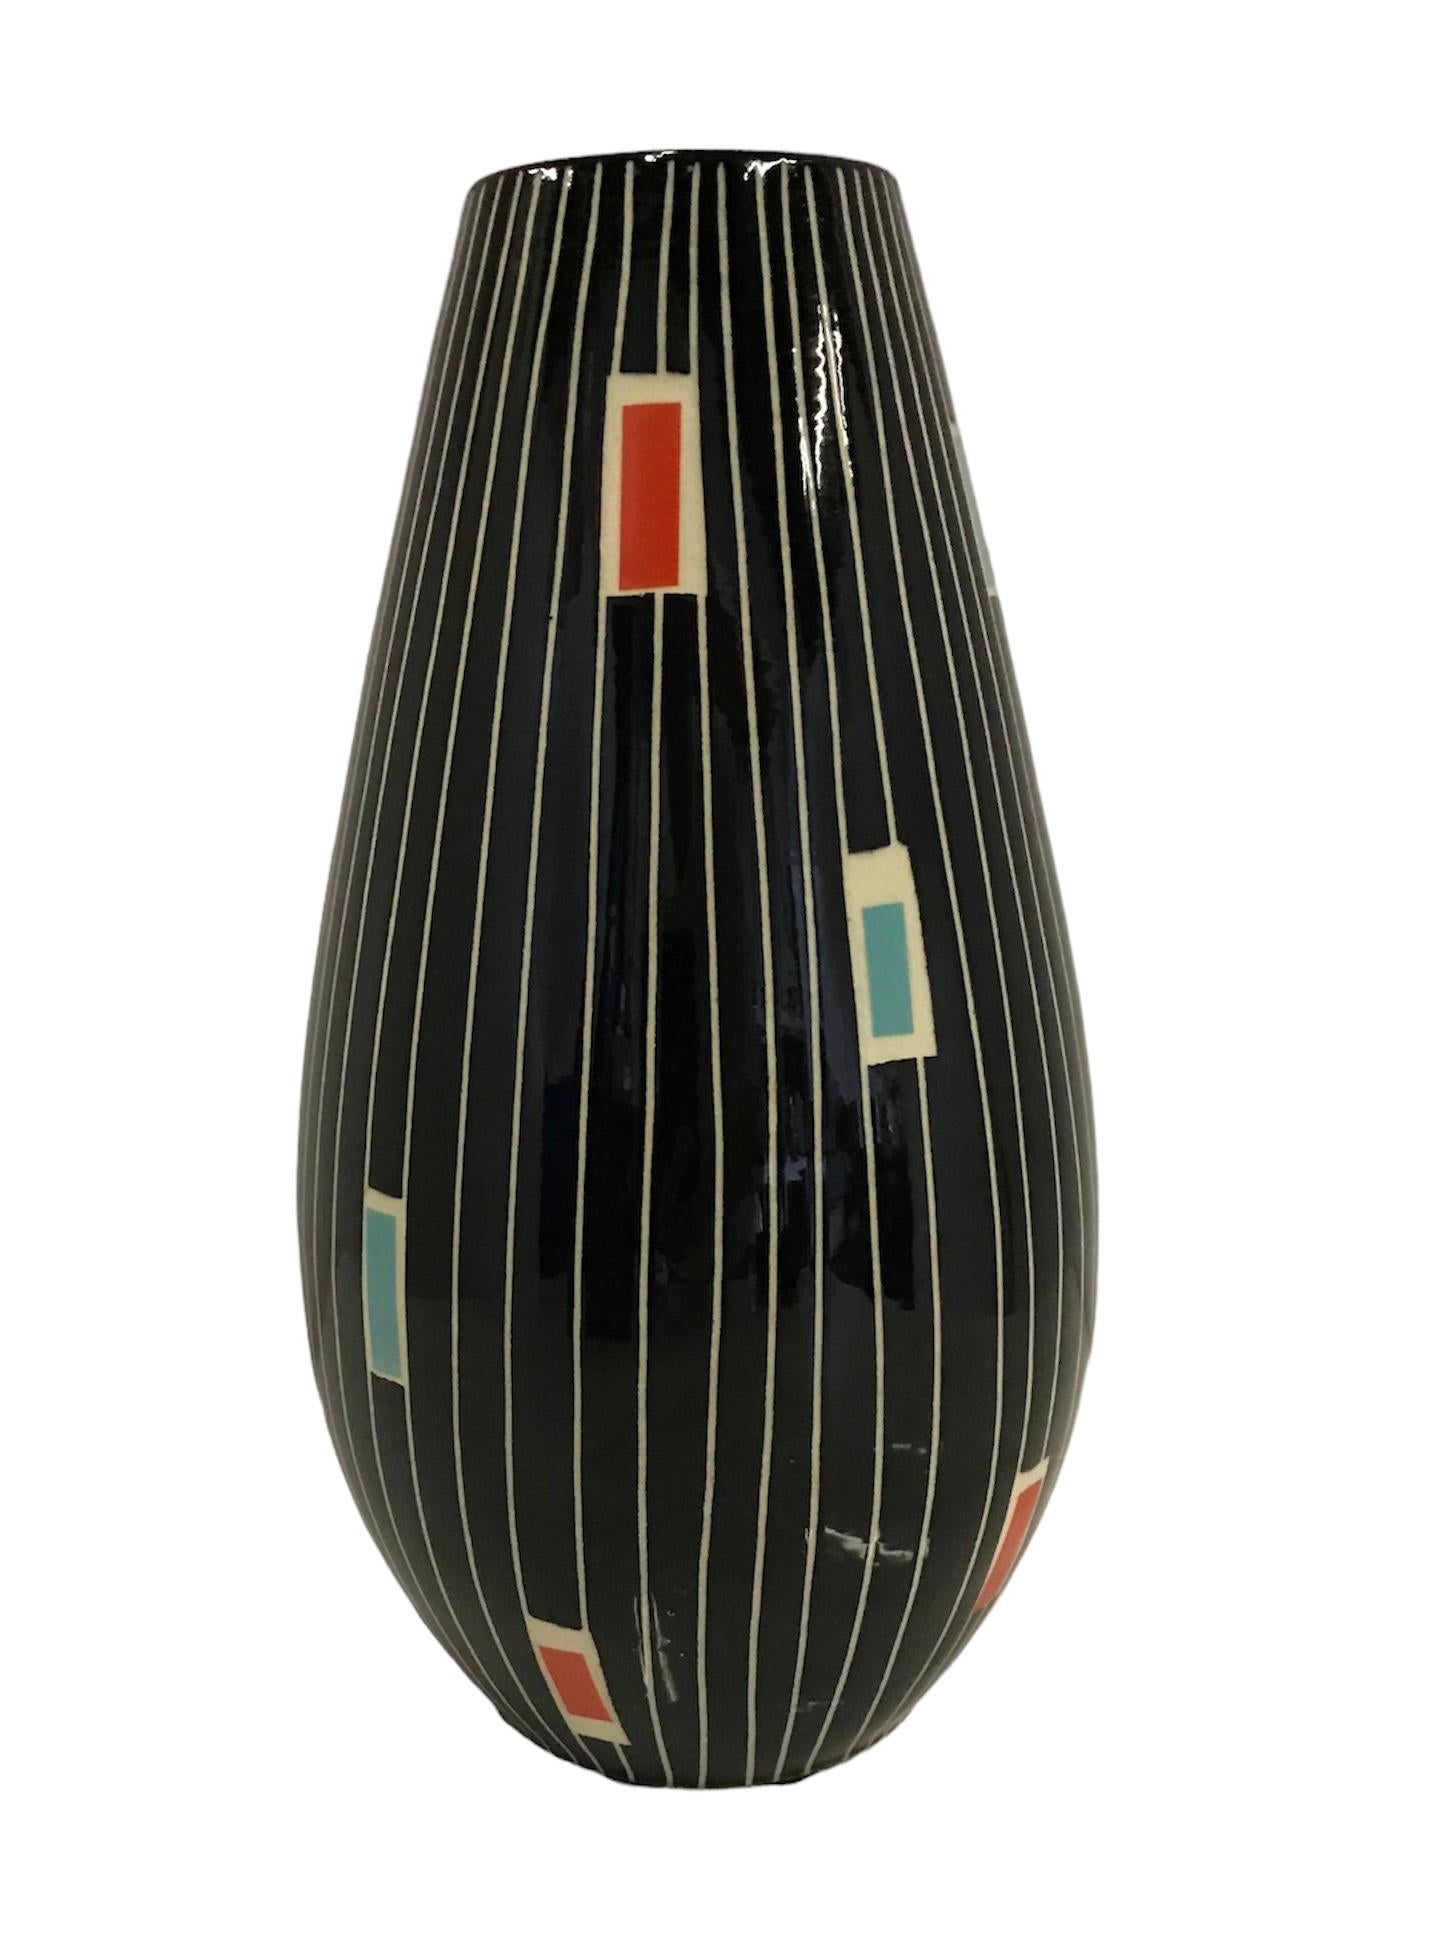 Eine Reihe von farbigen Rechtecken auf senkrecht eingeschnittenen weißen Linien über einem
schwarzer, glänzender Glasurhintergrund definiert diese Midcentury Modern Vase von
Üebelacker-Keramik auch bekannt als Ü-Keramik von Deutschland. Das